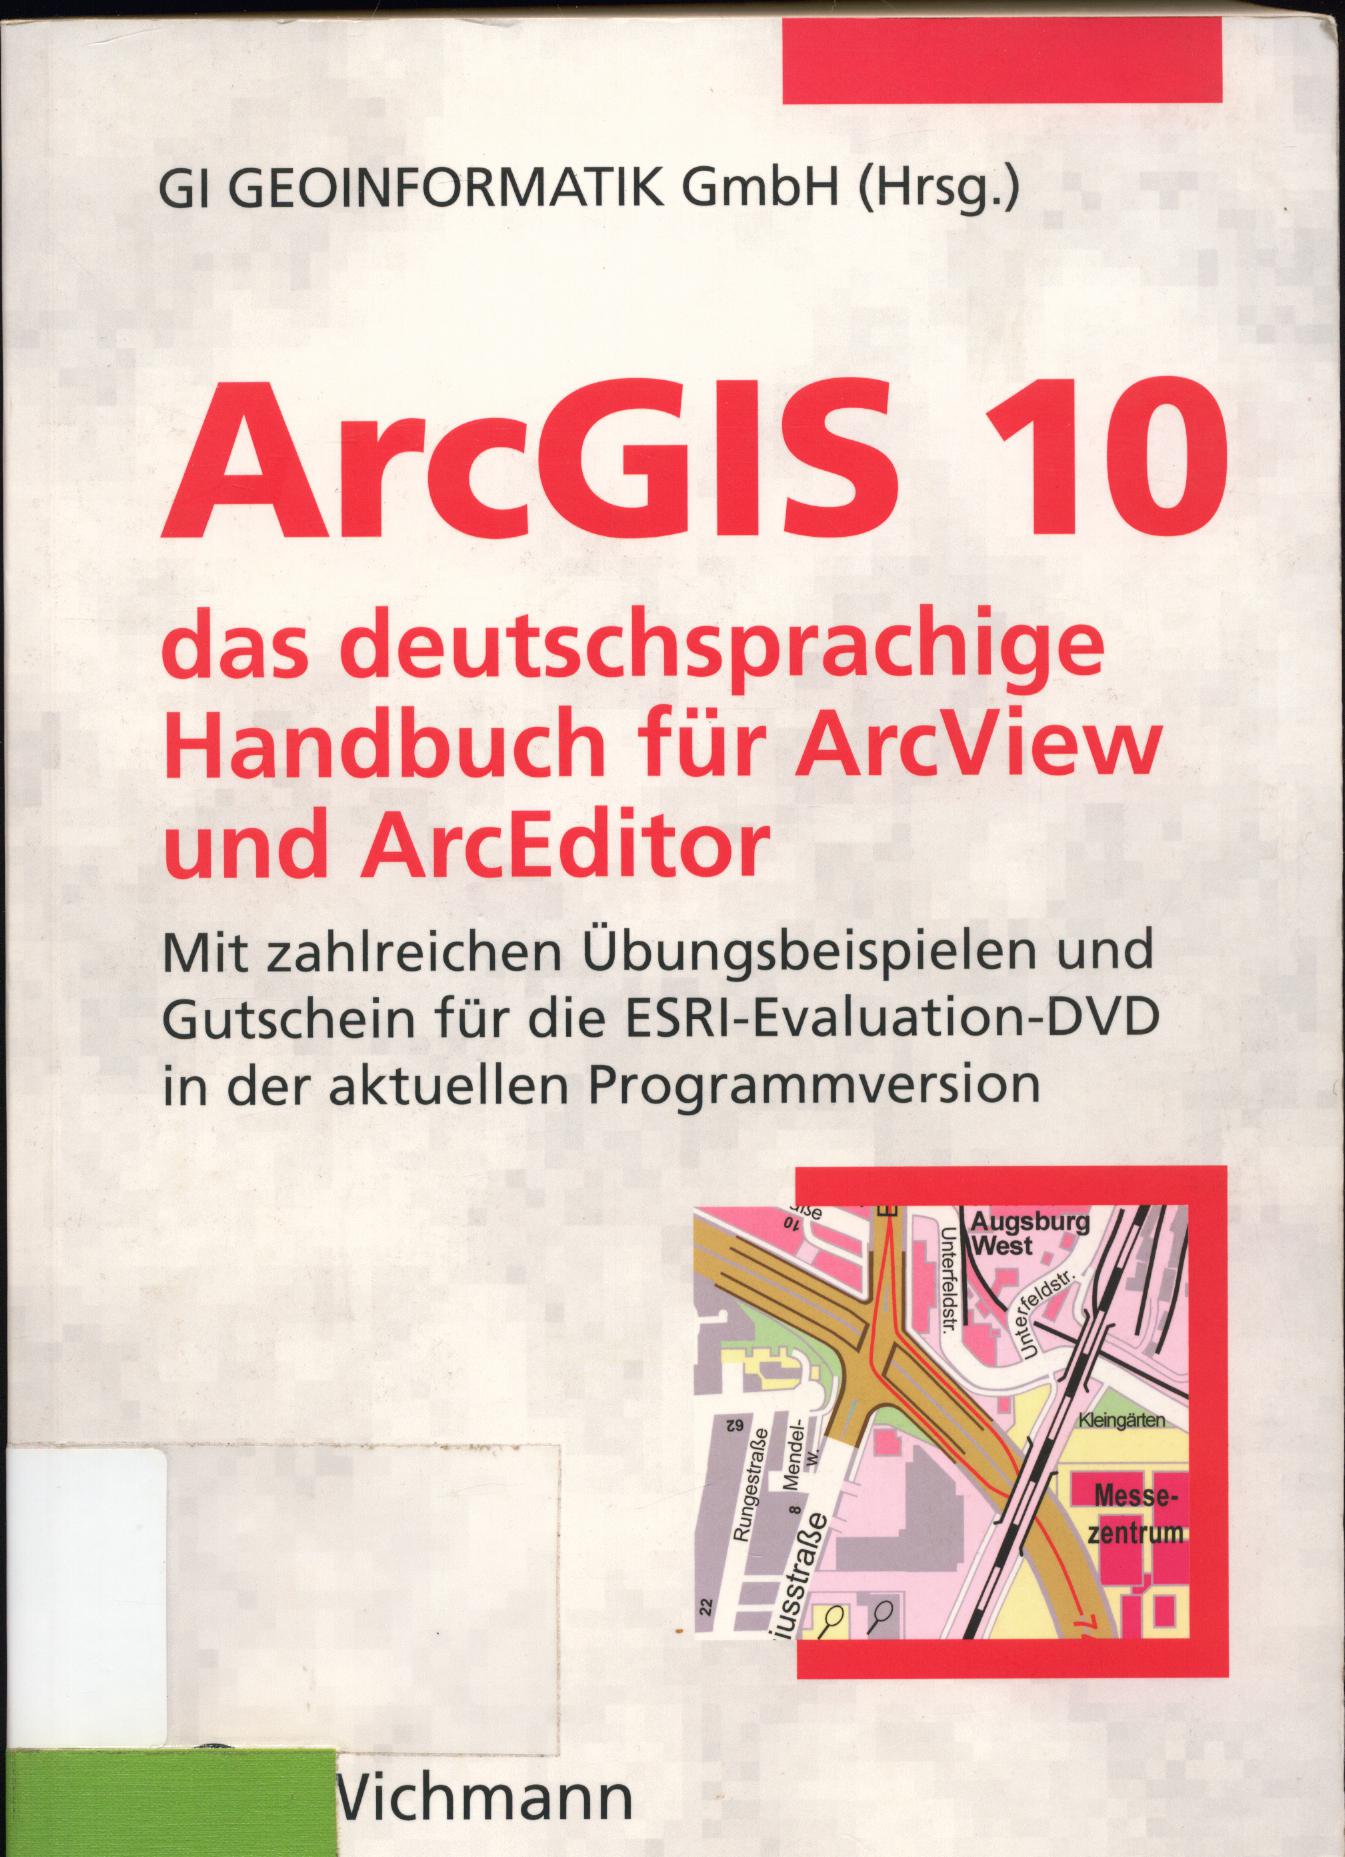 ArcGIS 10 das deutschsprachige Handbuch für ArcView und ArcEditor Mit zahlreichen Übungsbeispielen und Gutschein für die ESRI Evaluation-DVD in der aktuellen Programmversion 1. Auflage - GI Geoinformatik GmbH